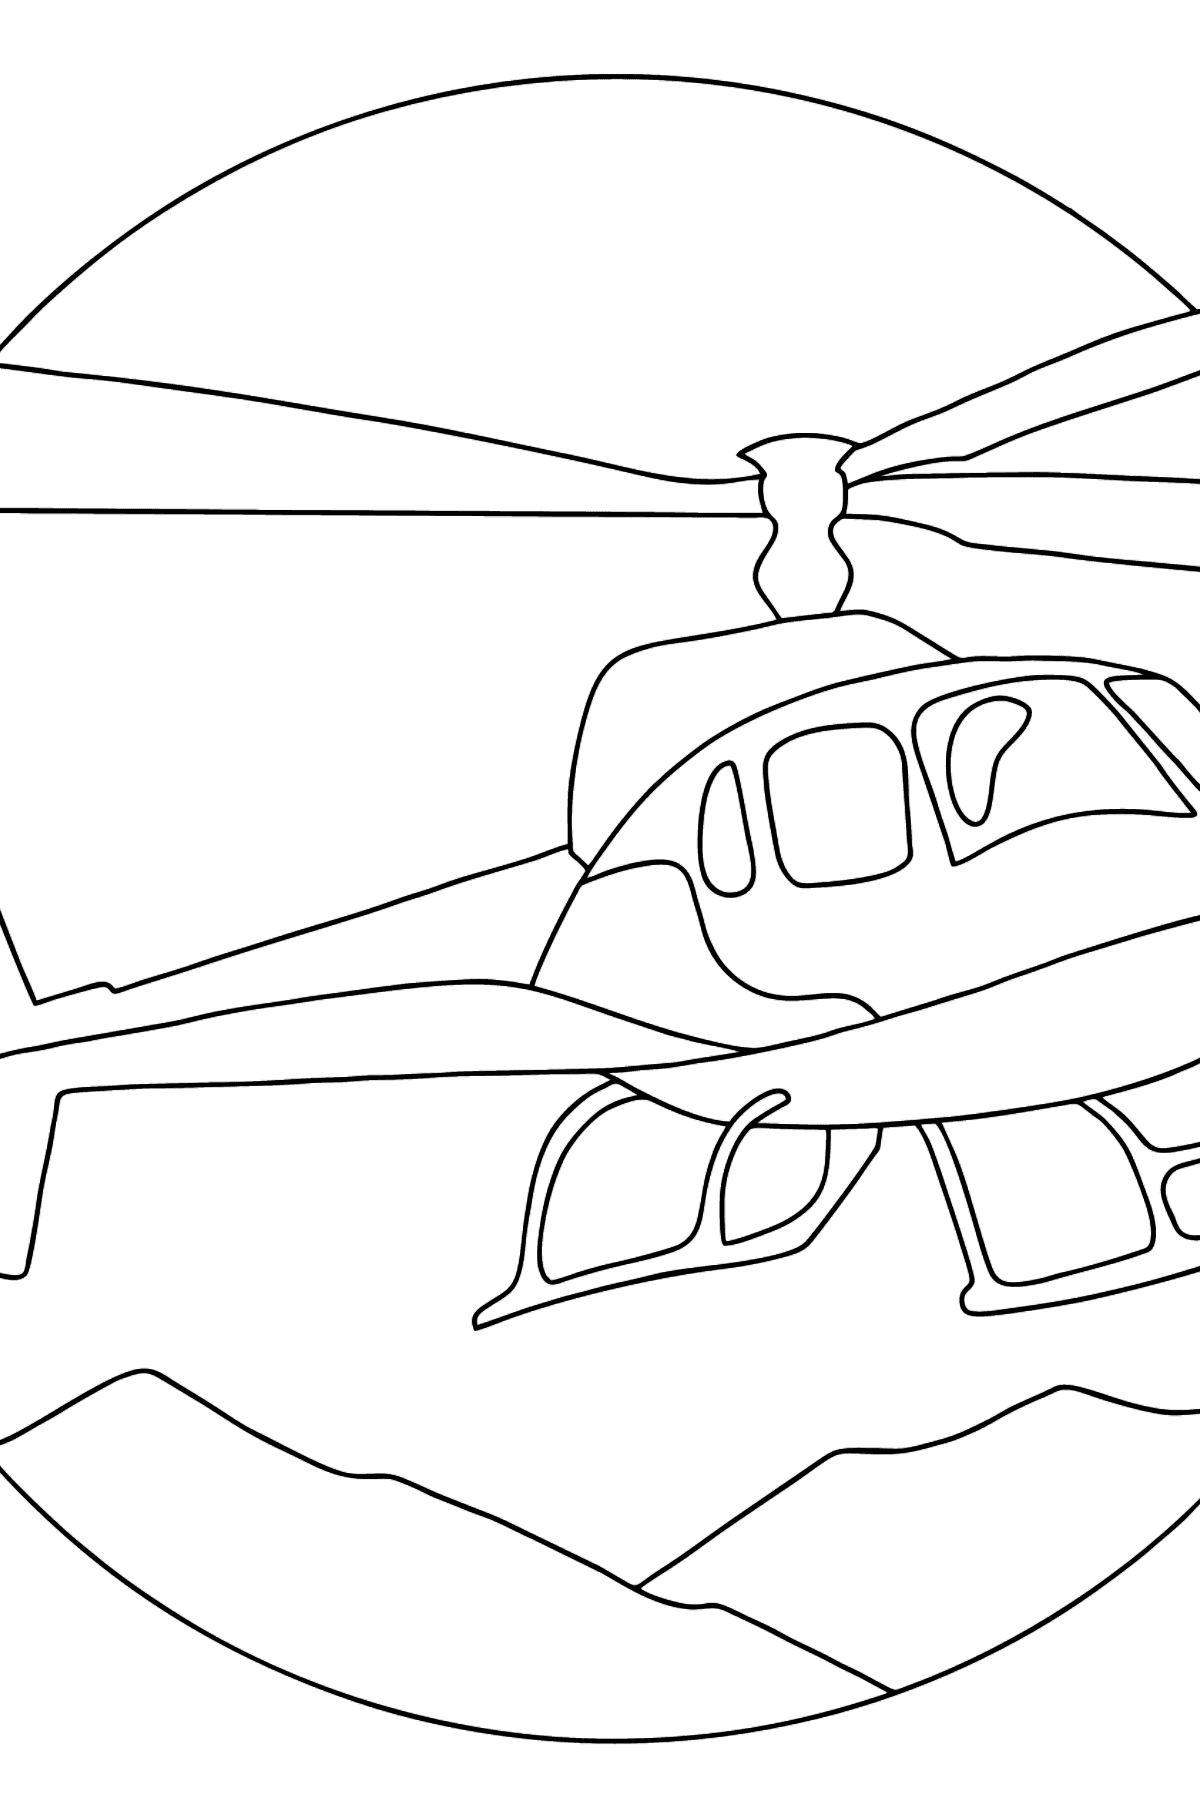 Disegni da colorare - Una città in elicottero - Disegni da colorare per bambini